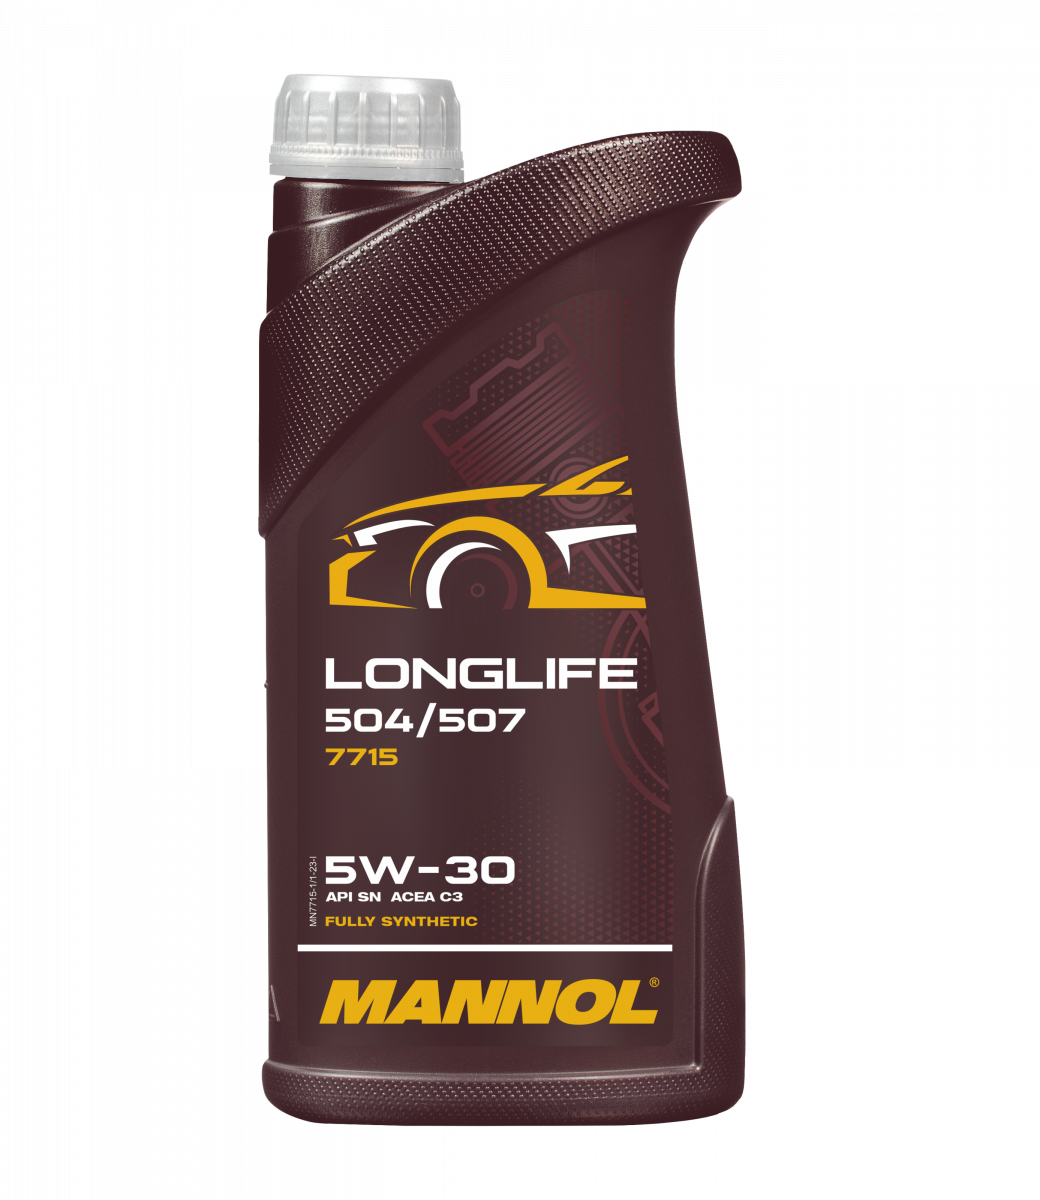 Mannol Longlife Engine Oil 504/507 5W-30 7715